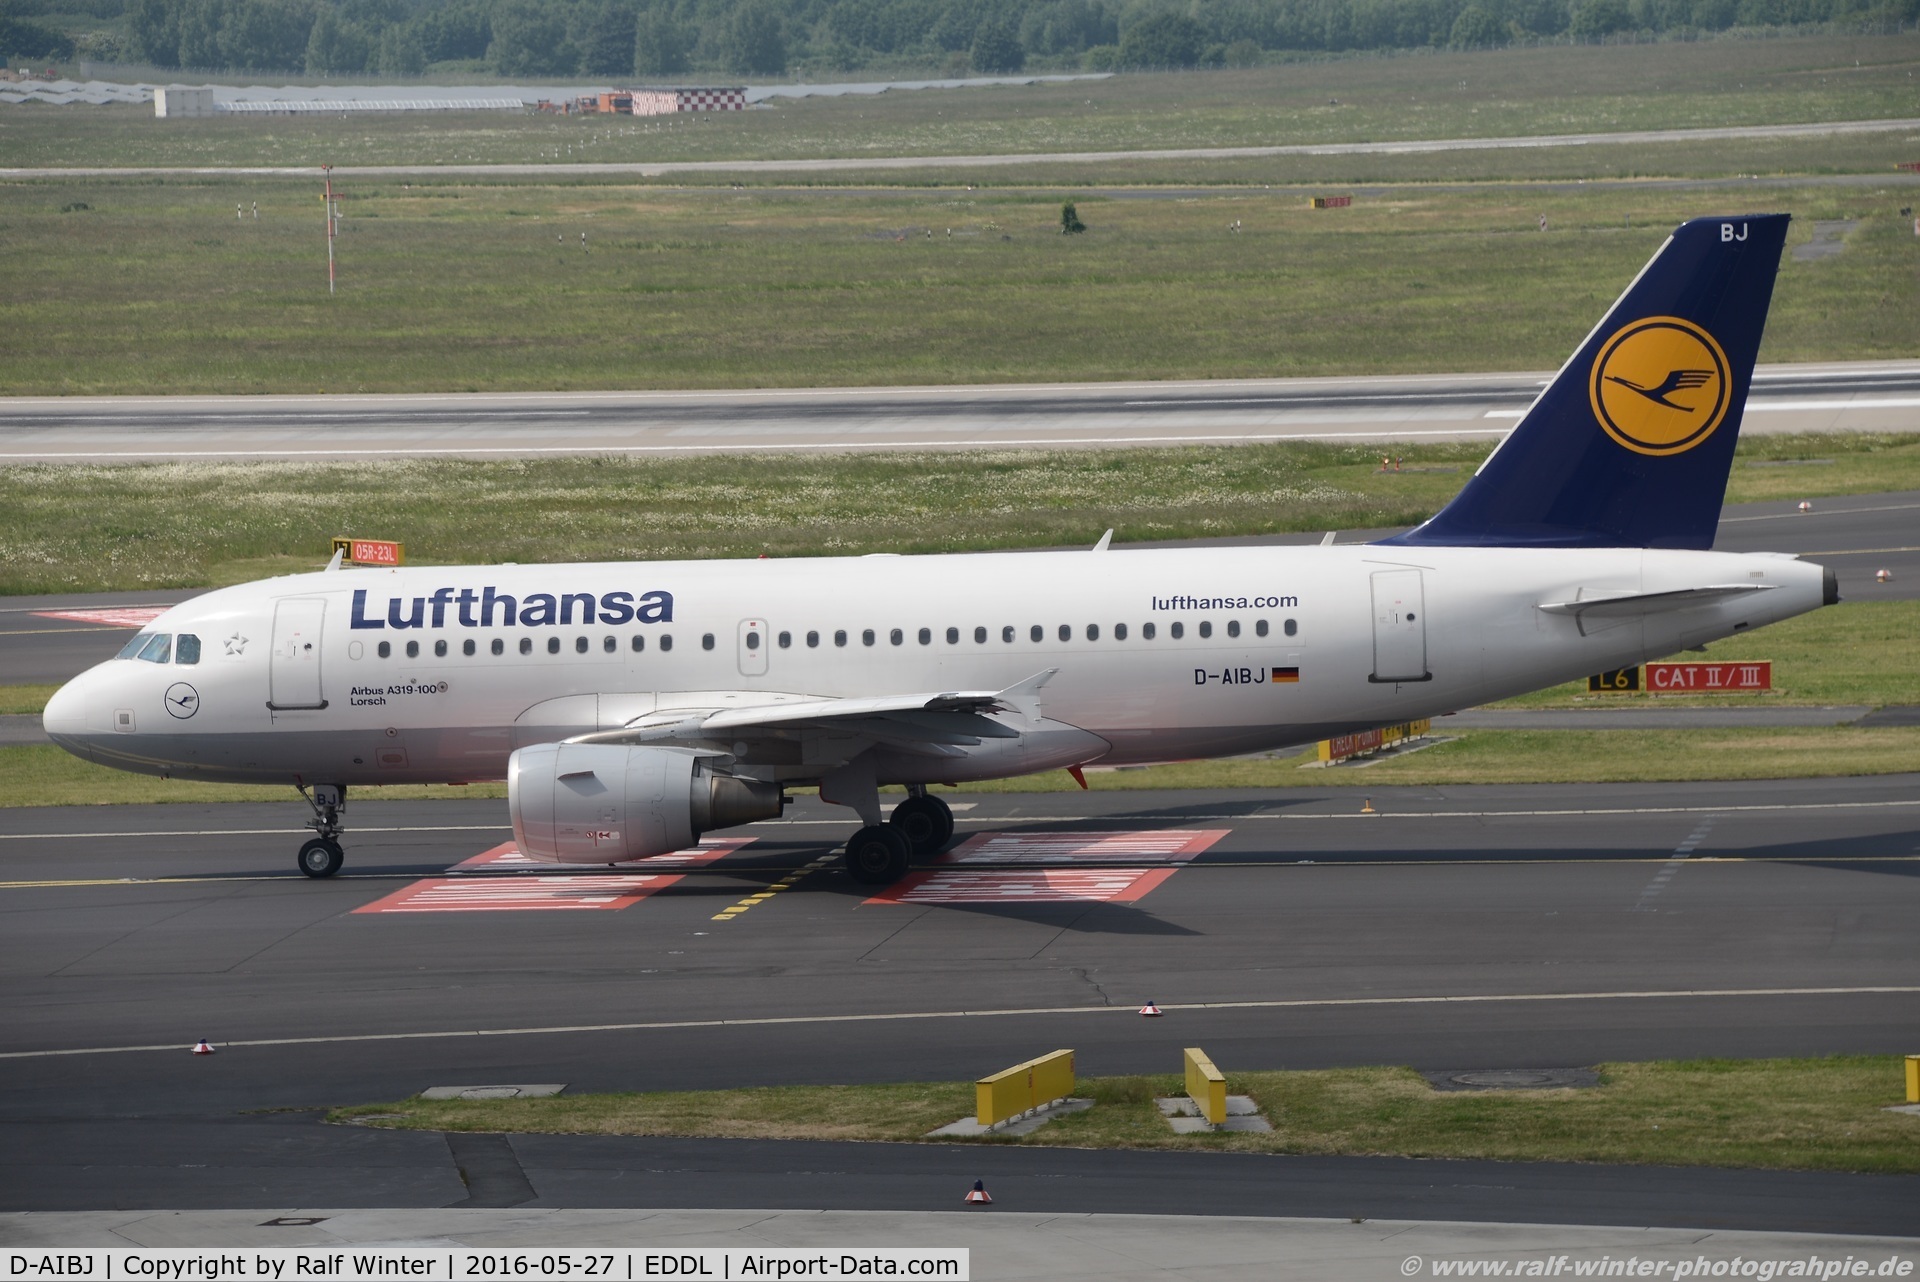 D-AIBJ, 2012 Airbus A319-112 C/N 5293, Airbus A319-112 - LH DLH Lufthansa 'Lorsch' - 5293 - D-AIBJ - 27.05.2016 - DUS